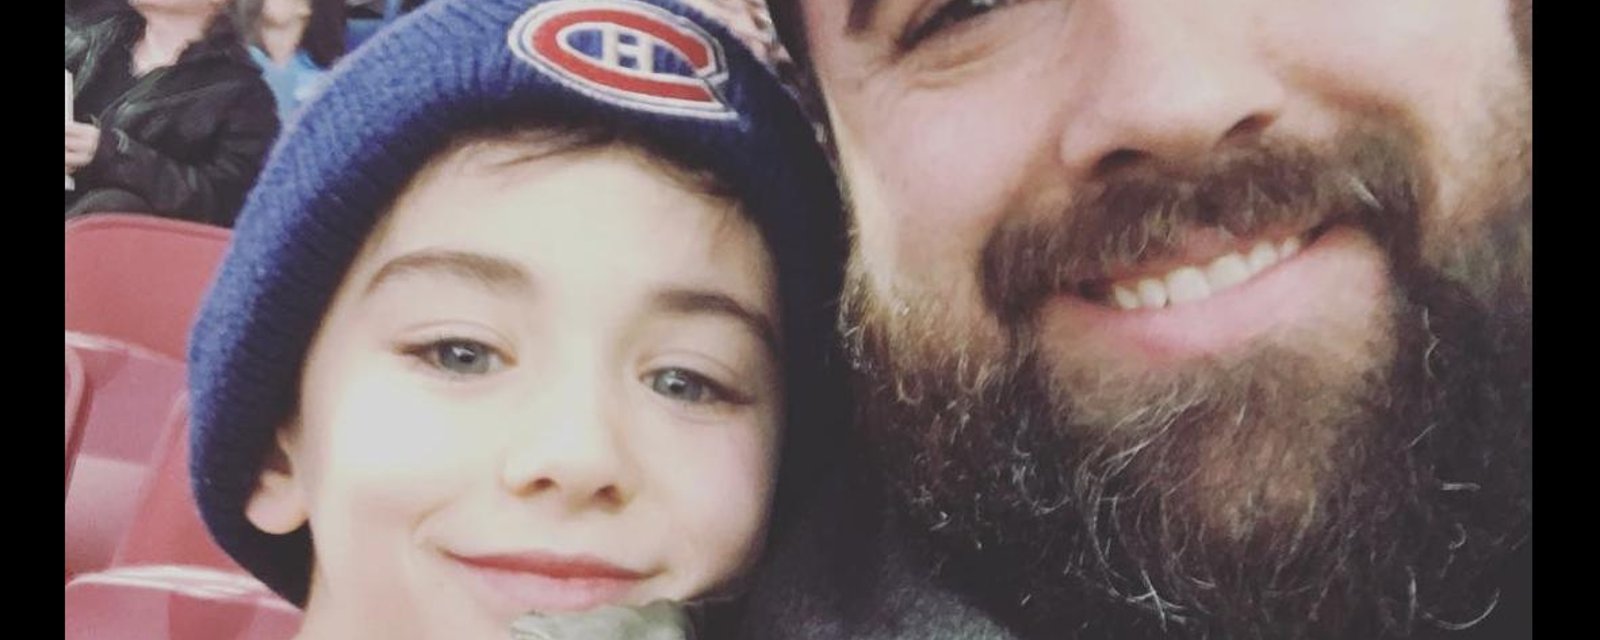 Jonathan Roberge donne des nouvelles de son fils Xavier et confirme qu'il a un cancer du cerveau